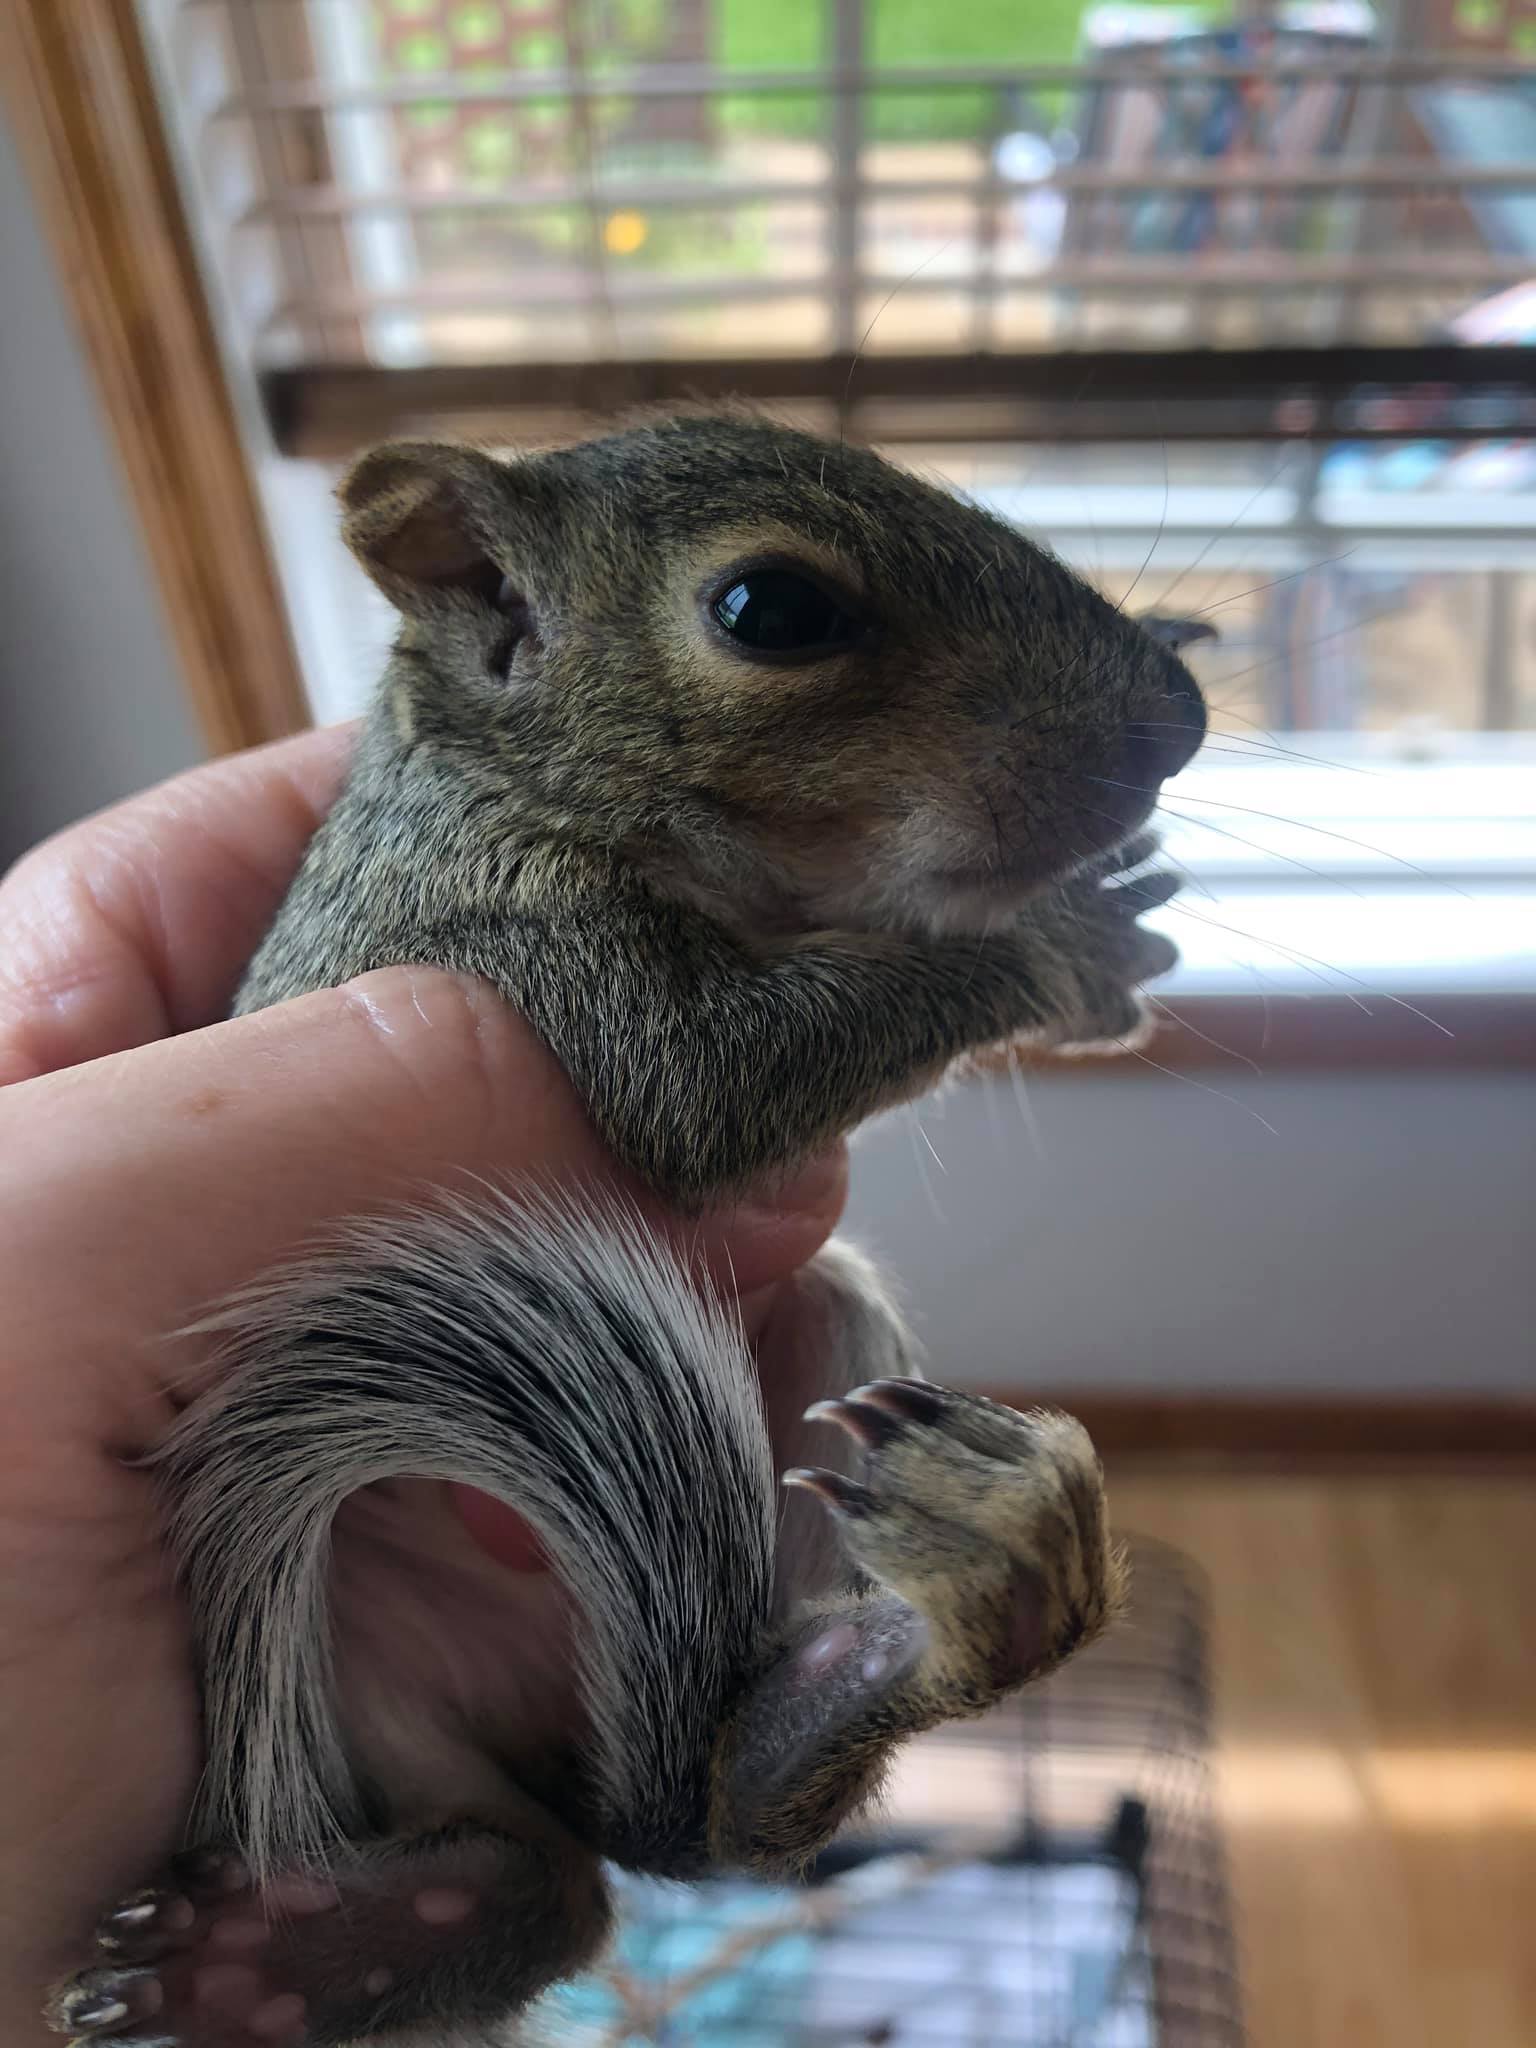 Baby squirrel